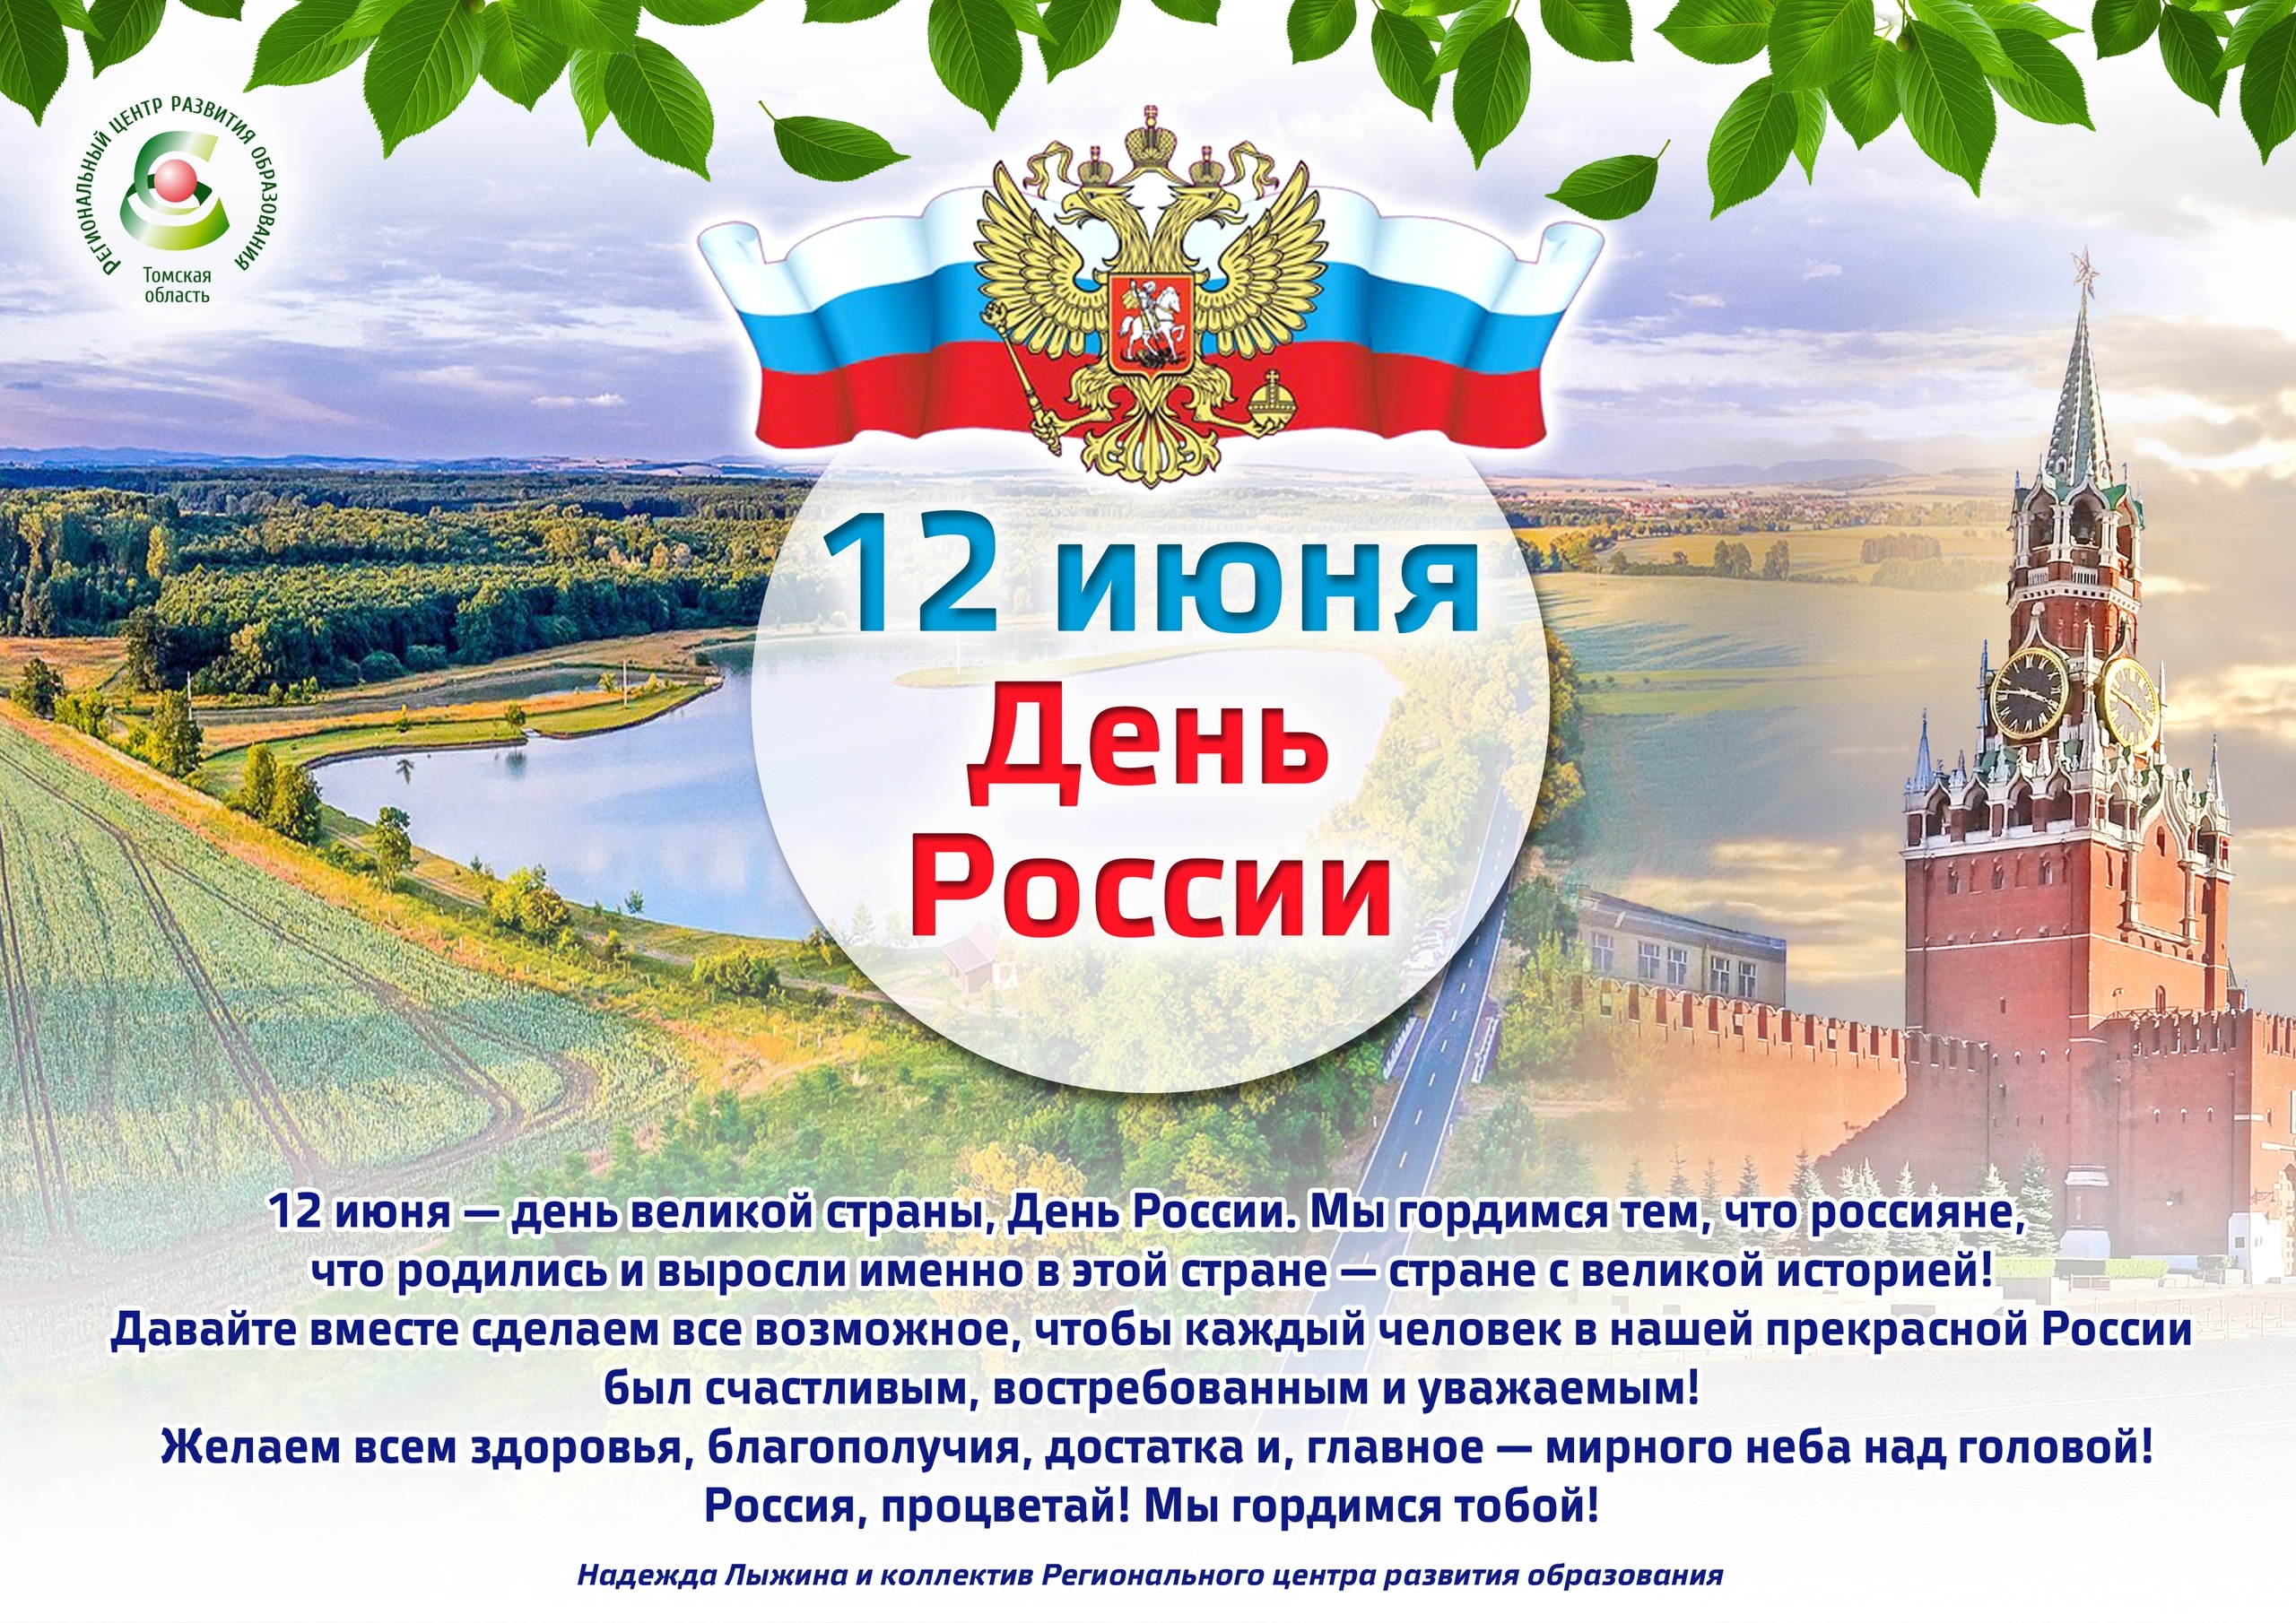 Значение даты 12 июня для российской федерации